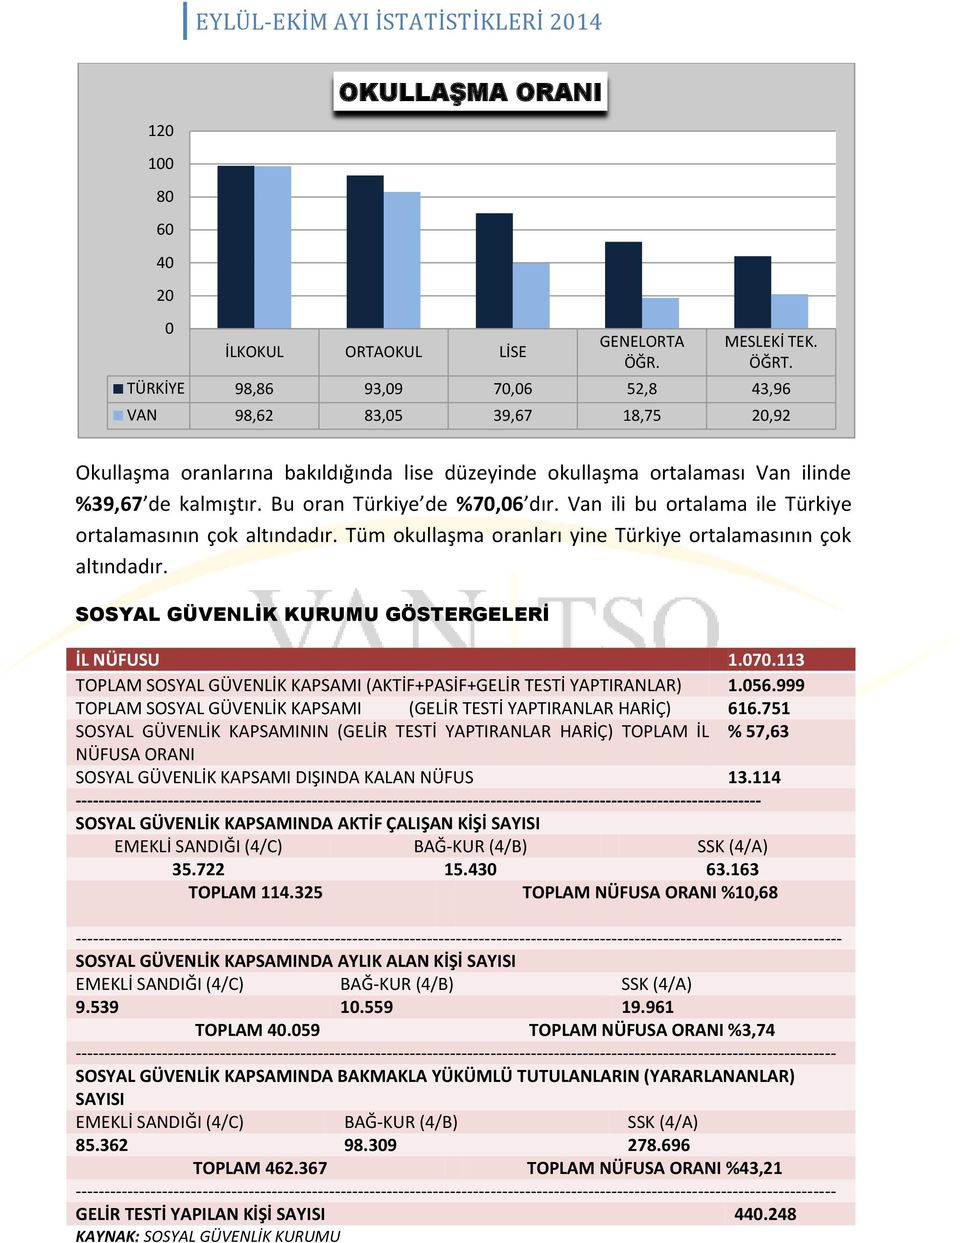 Bu oran Türkiye de %70,06 dır. Van ili bu ortalama ile Türkiye ortalamasının çok altındadır. Tüm okullaşma oranları yine Türkiye ortalamasının çok altındadır.